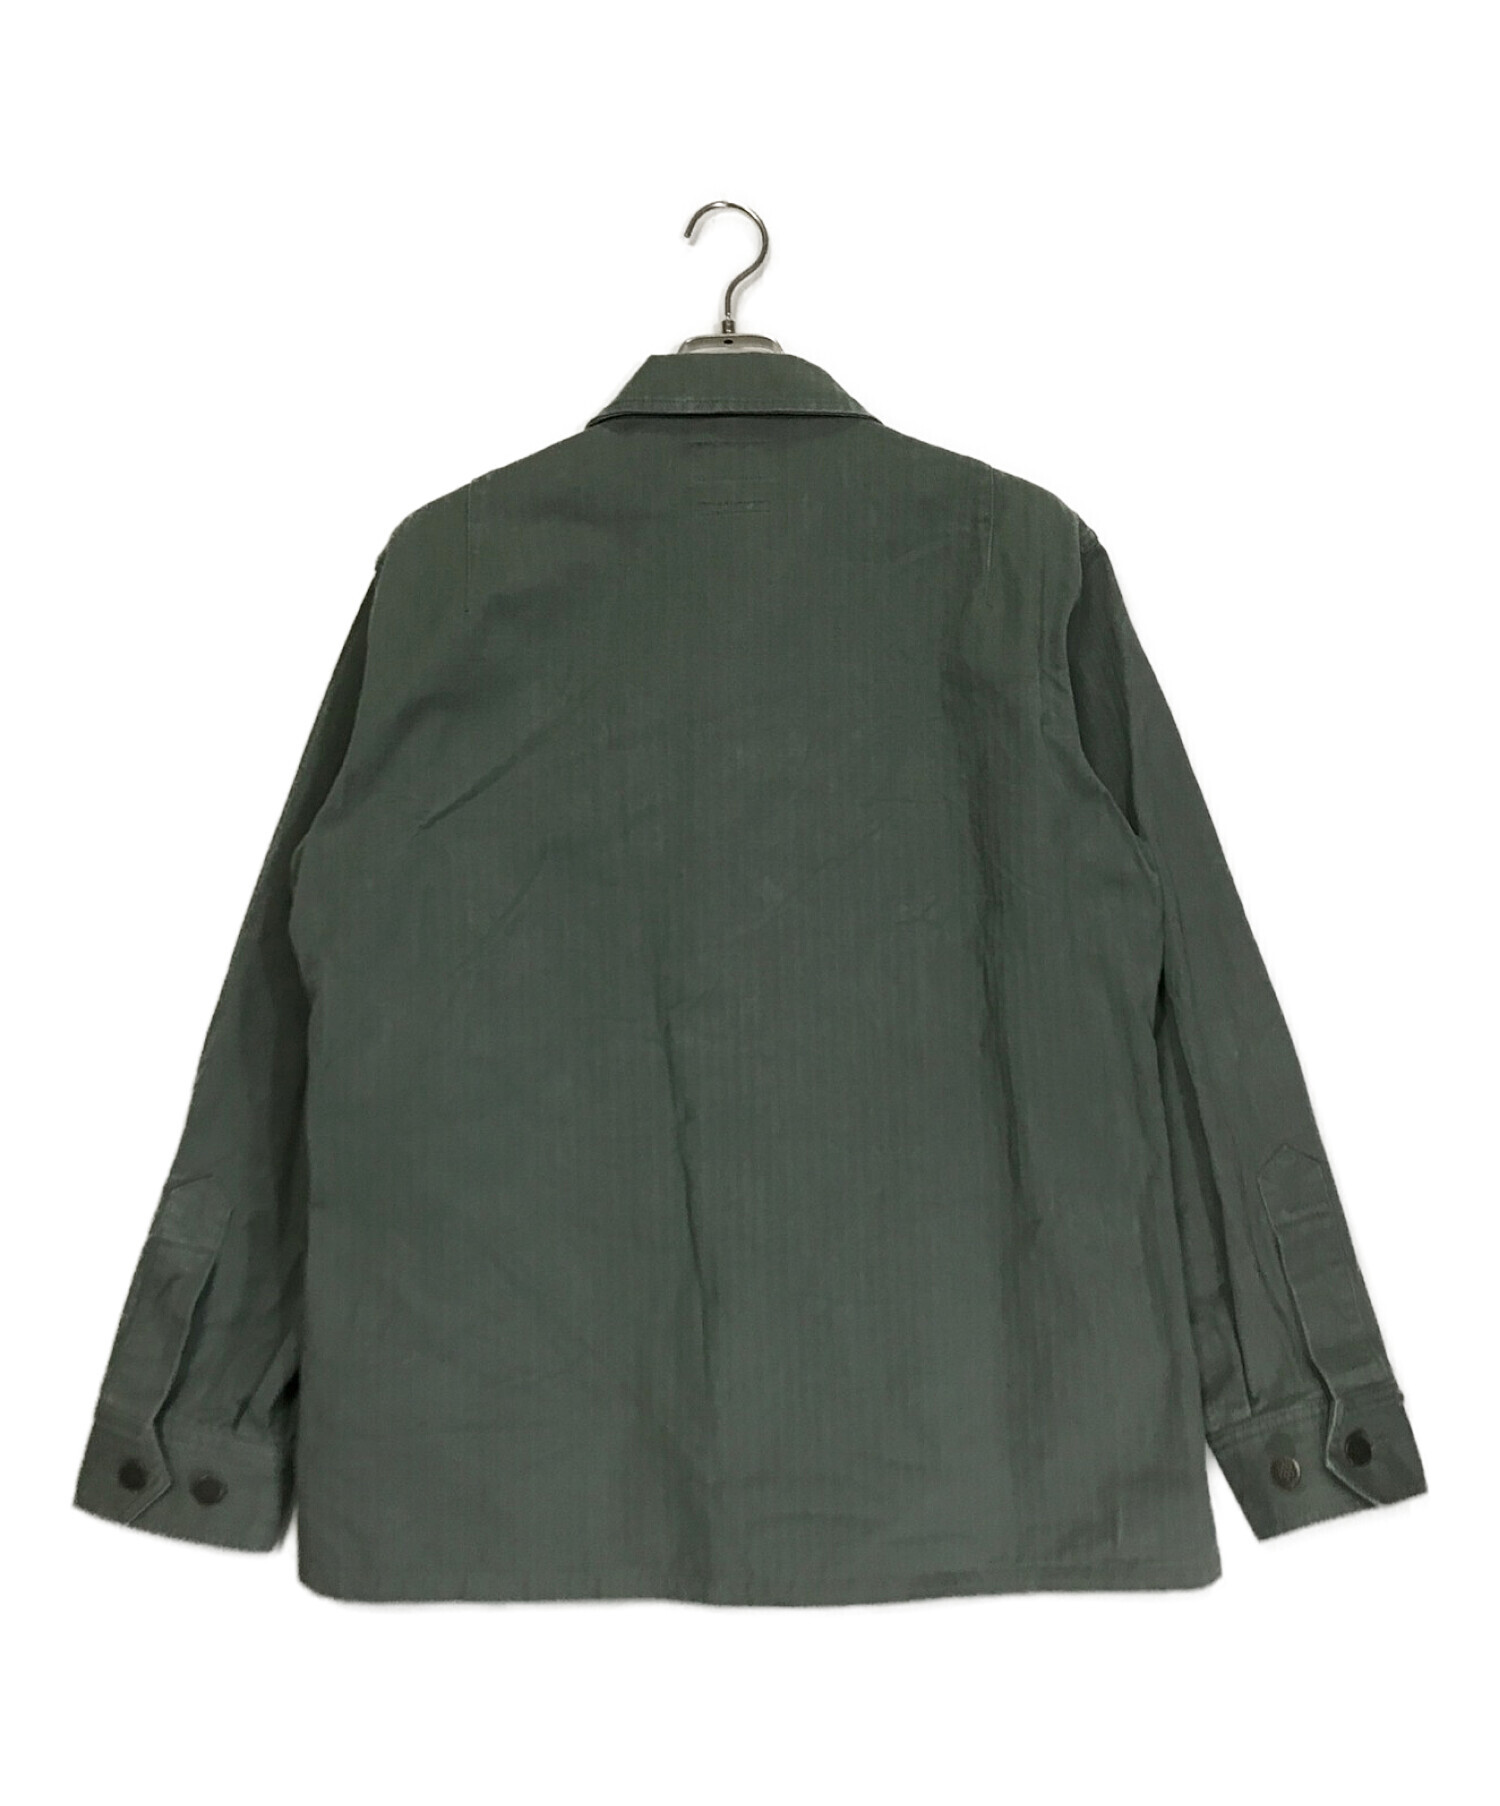 BEAMS PLUS (ビームスプラス) ヘリンボーン ミリタリーシャツジャケット グリーン サイズ:S